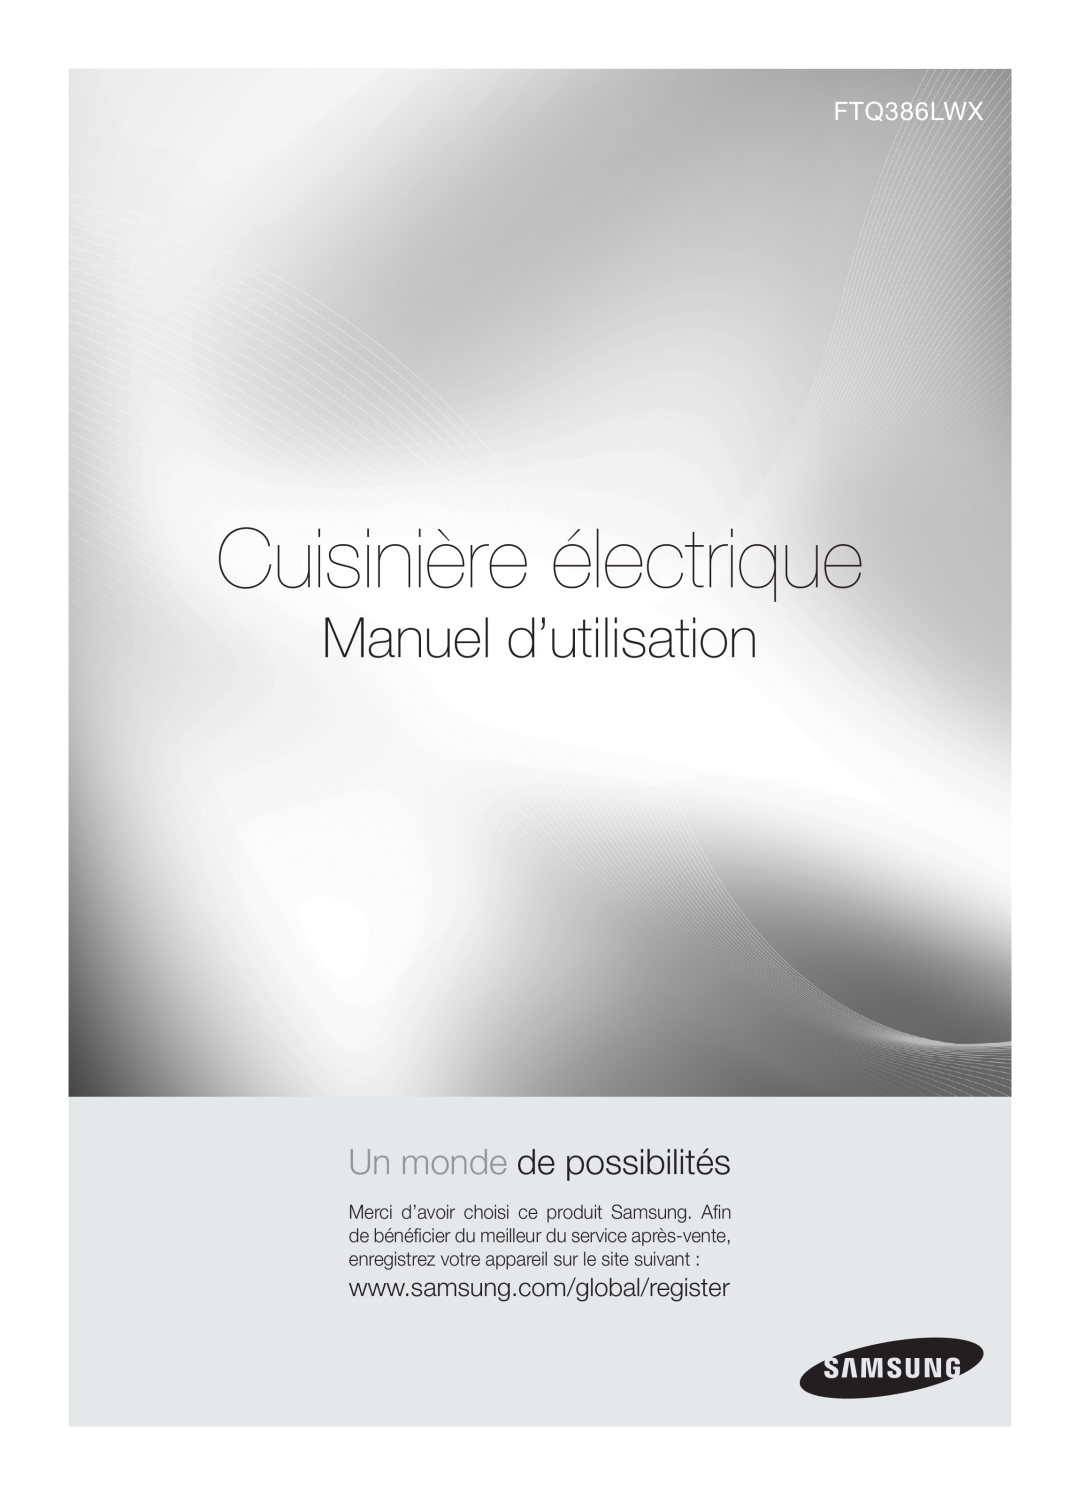 Samsung FTQ386LWX user manual Cuisinière électrique, Manuel d’utilisation, Un monde de possibilités 